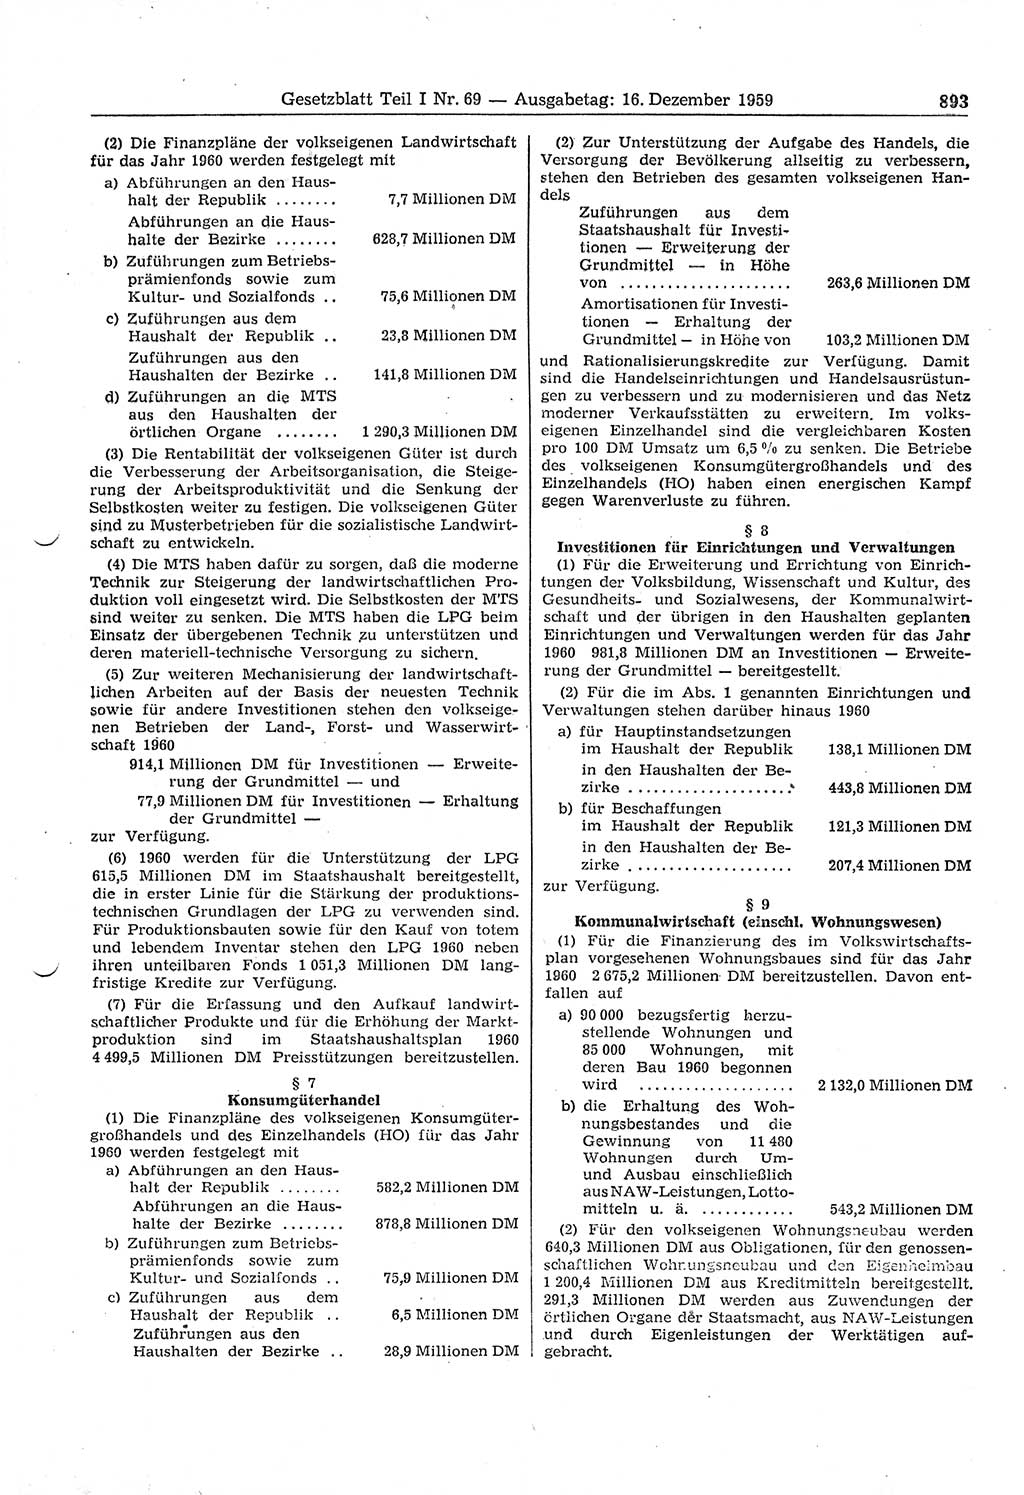 Gesetzblatt (GBl.) der Deutschen Demokratischen Republik (DDR) Teil Ⅰ 1959, Seite 893 (GBl. DDR Ⅰ 1959, S. 893)